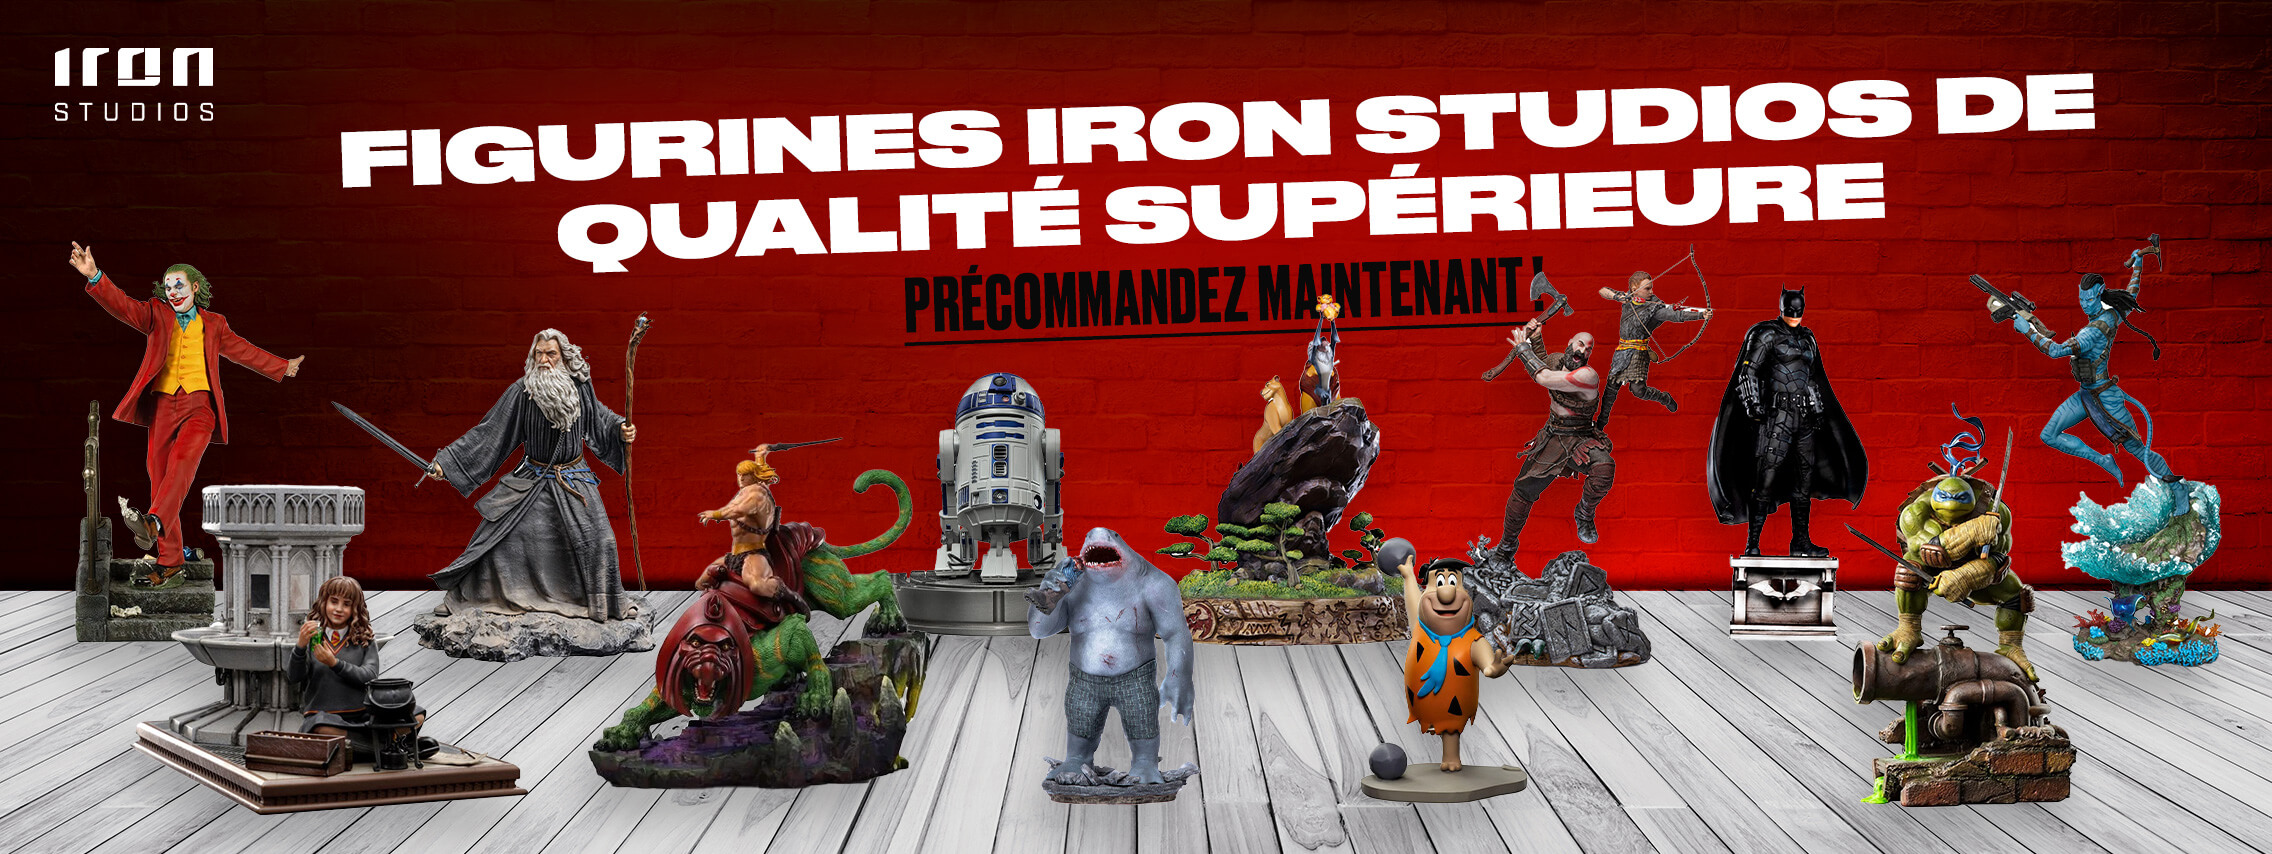 Figurines Iron Studios